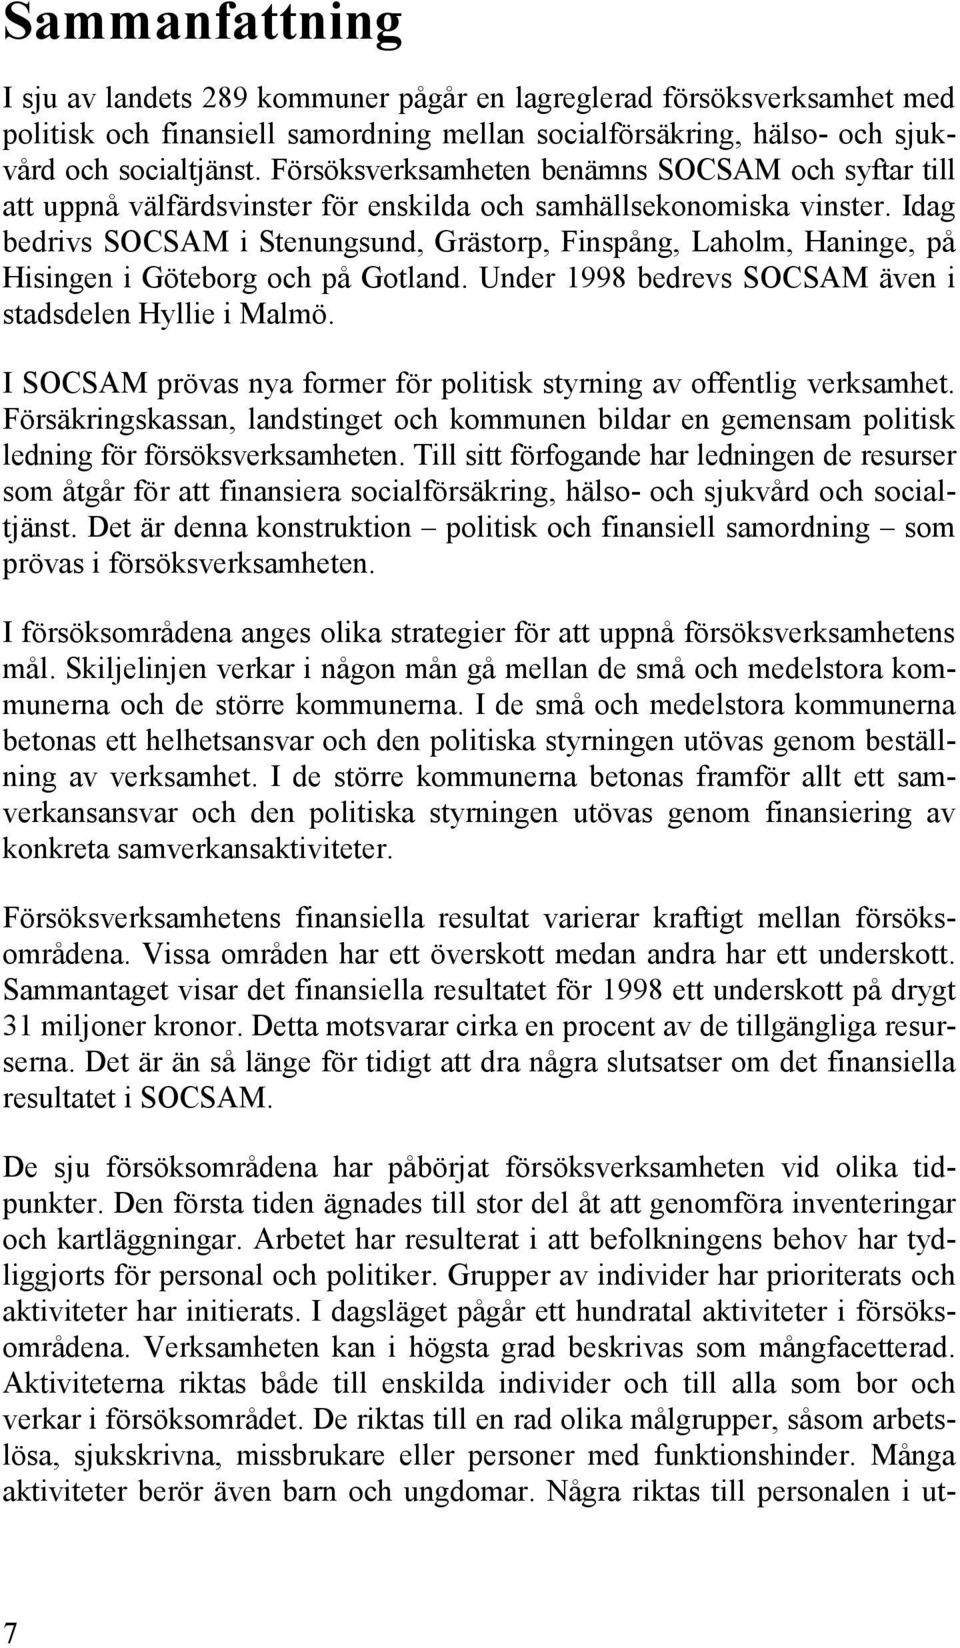 Idag bedrivs SOCSAM i Stenungsund, Grästorp, Finspång, Laholm, Haninge, på Hisingen i Göteborg och på Gotland. Under 1998 bedrevs SOCSAM även i stadsdelen Hyllie i Malmö.